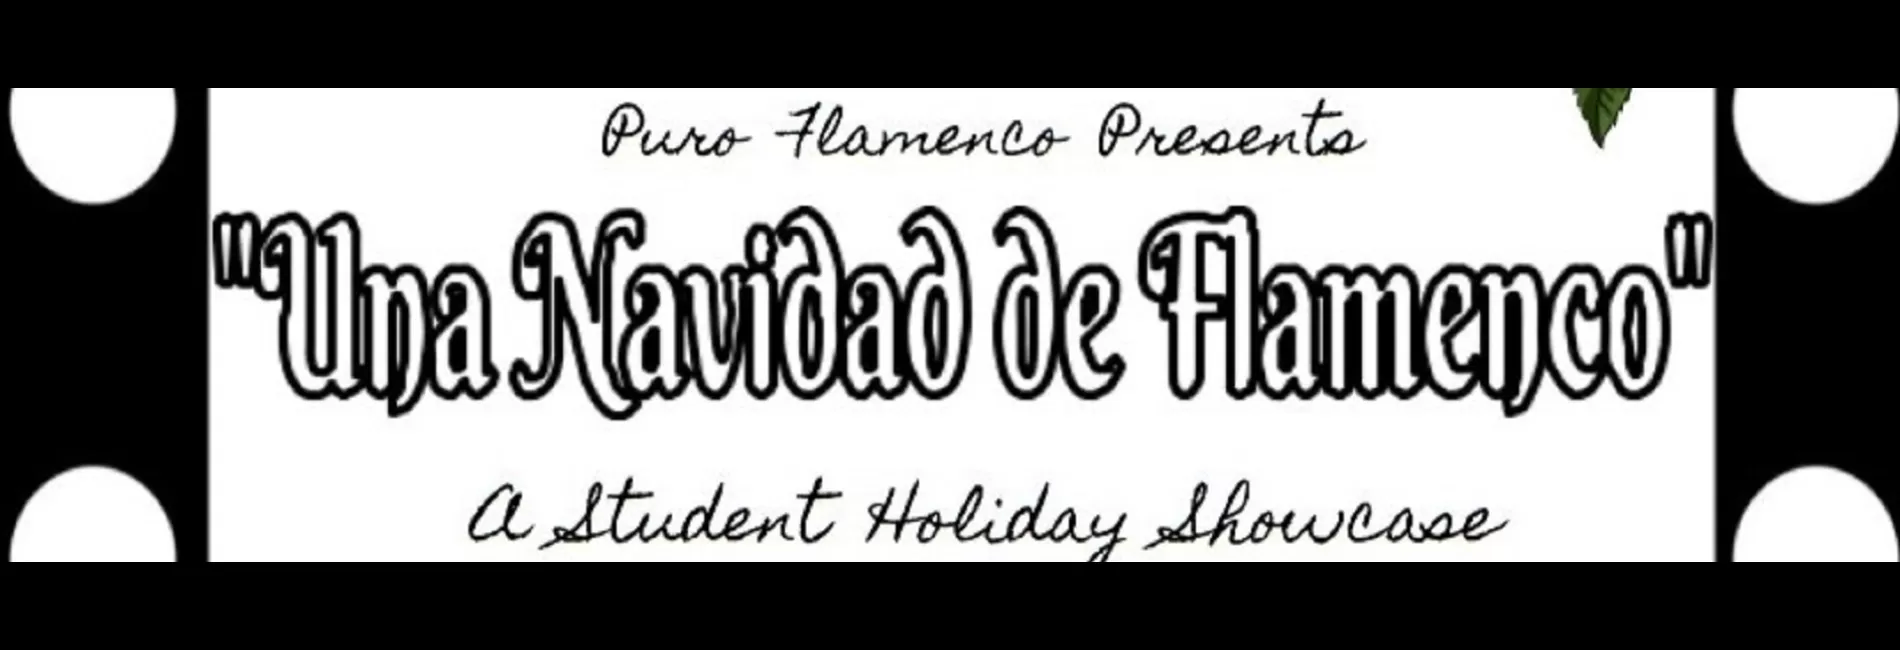 Una Navidad de Flamenco